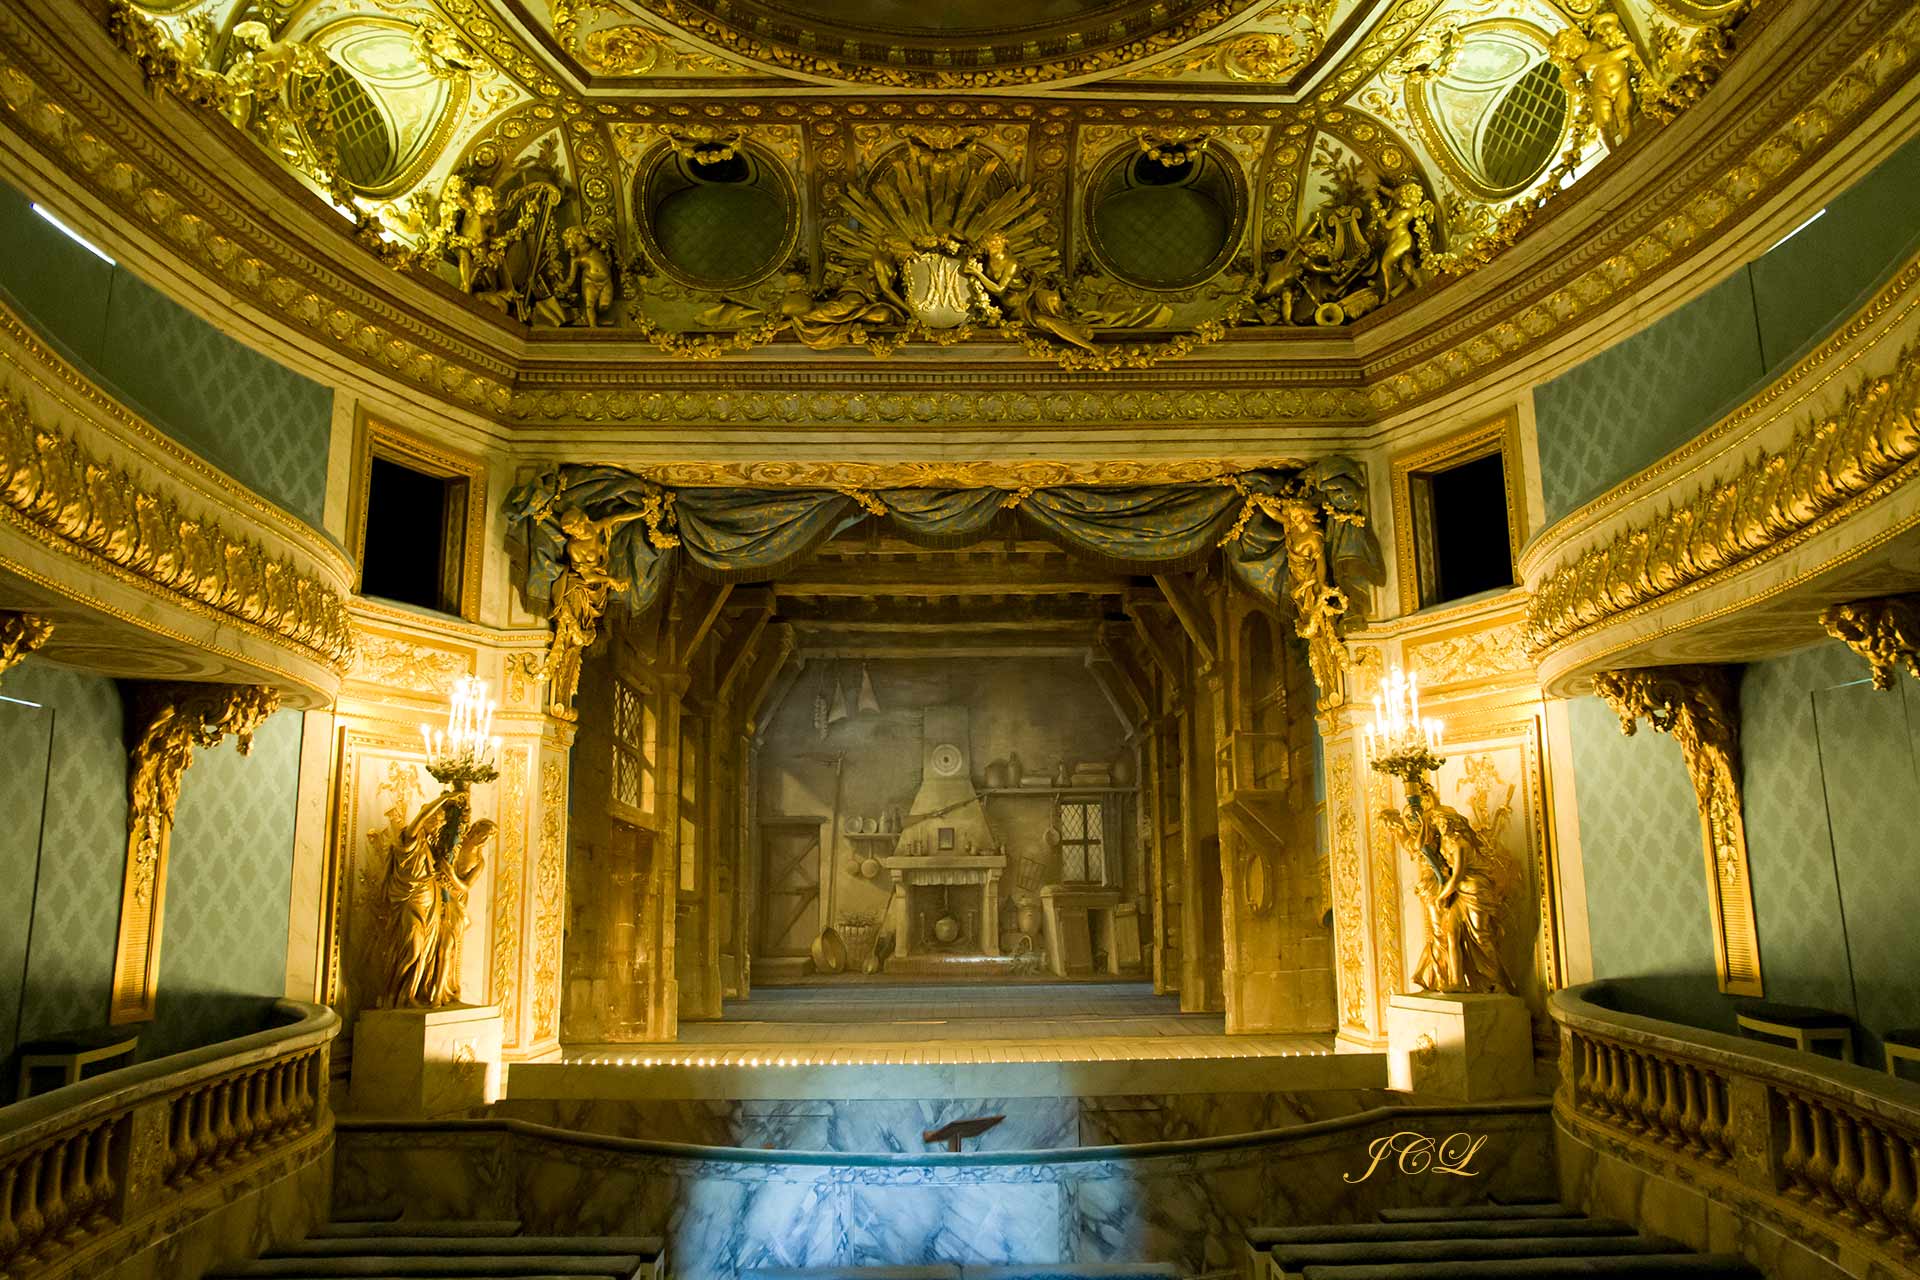 Le theatre de Marie Antoinette dans les jardins du petit trianon du chateau de versailles.